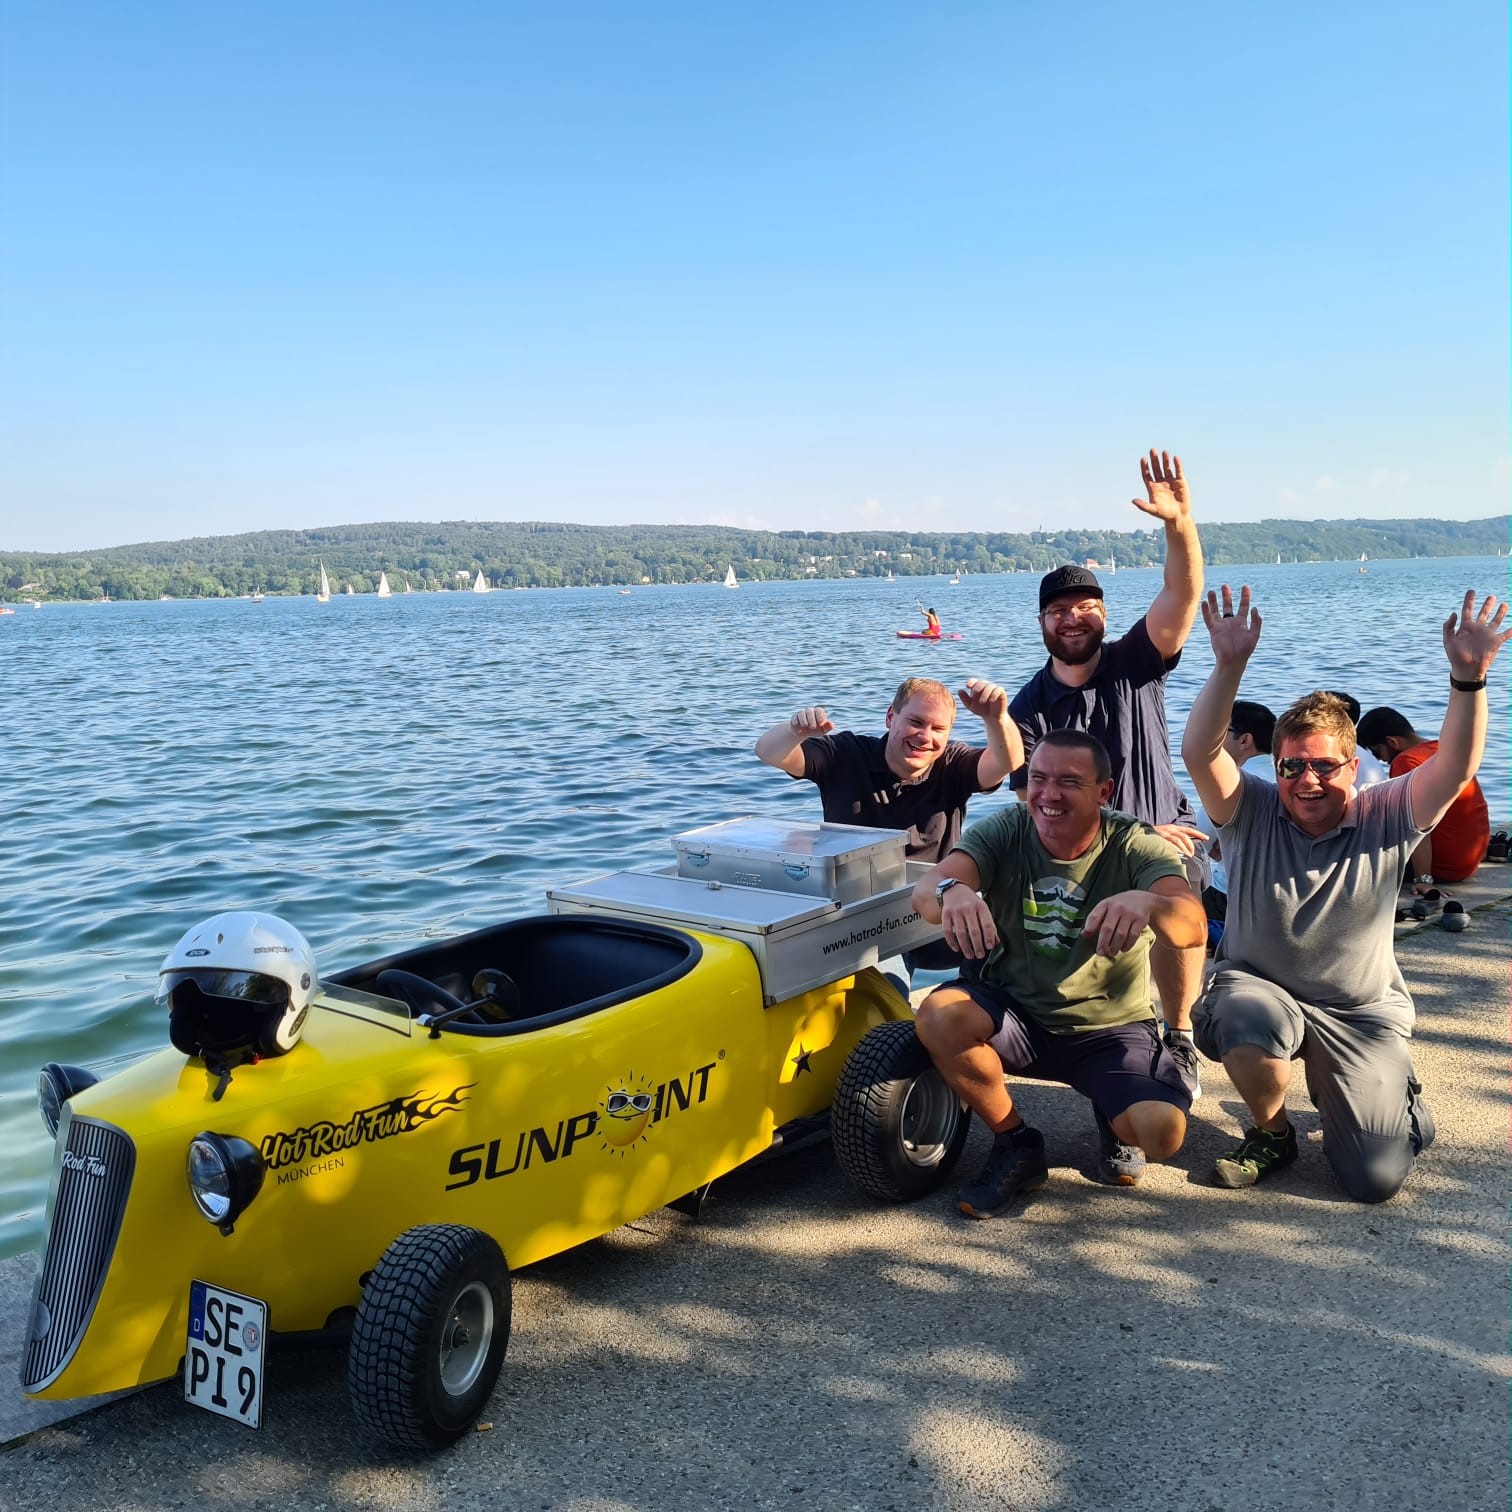 Ein Hot Rod Kart am Starnberger See, daneben sitzt die Gruppe und winkt und lächelt fröhlich.